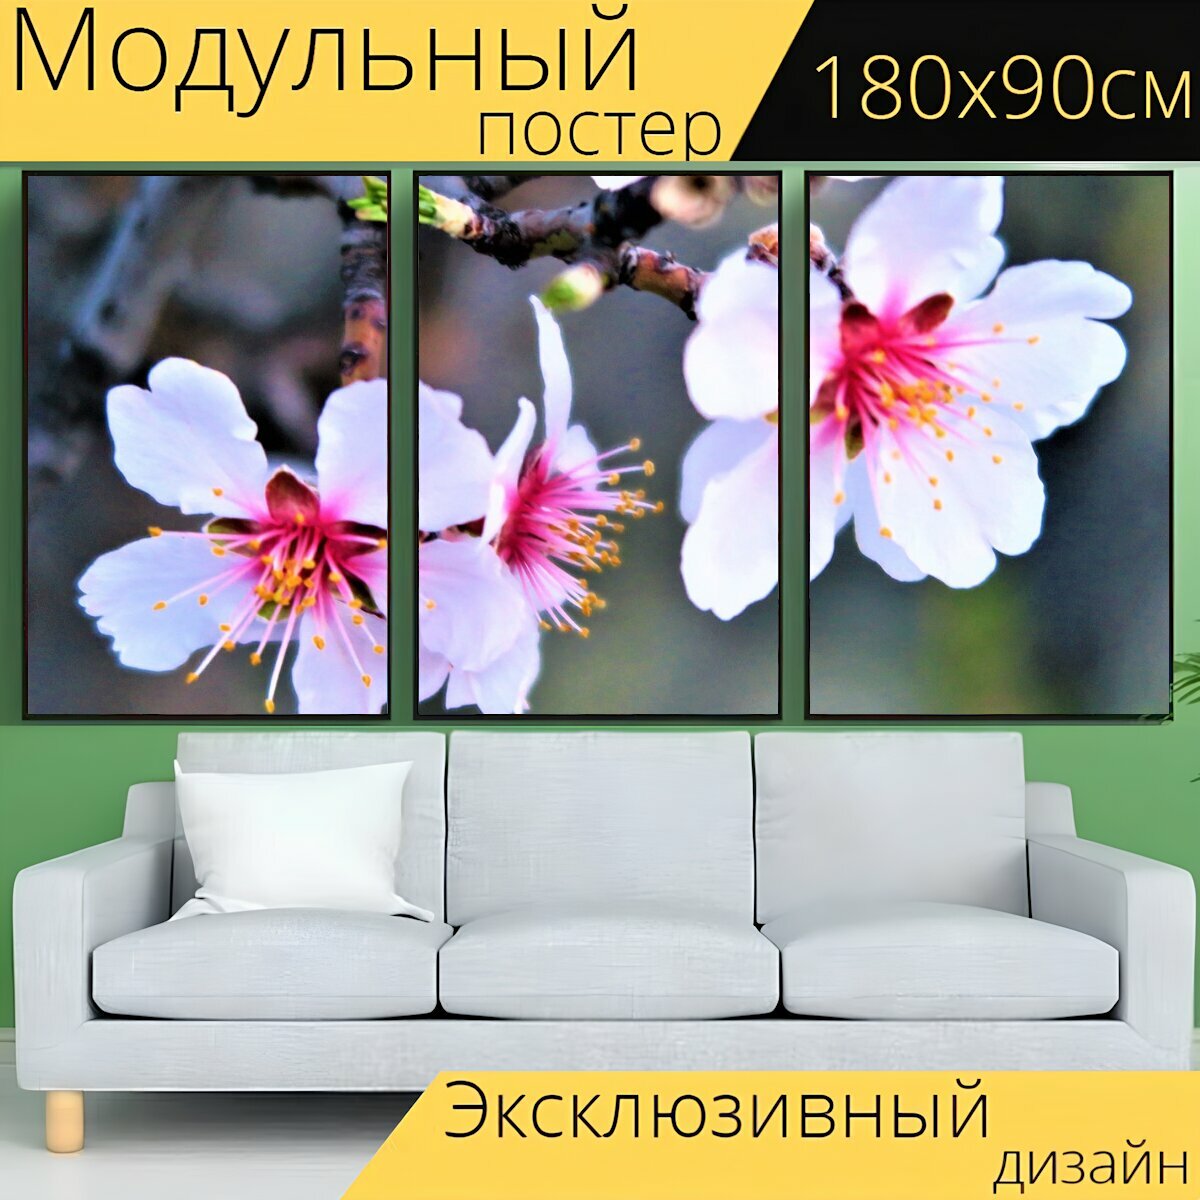 Модульный постер "Цветок, весна, дерево" 180 x 90 см. для интерьера